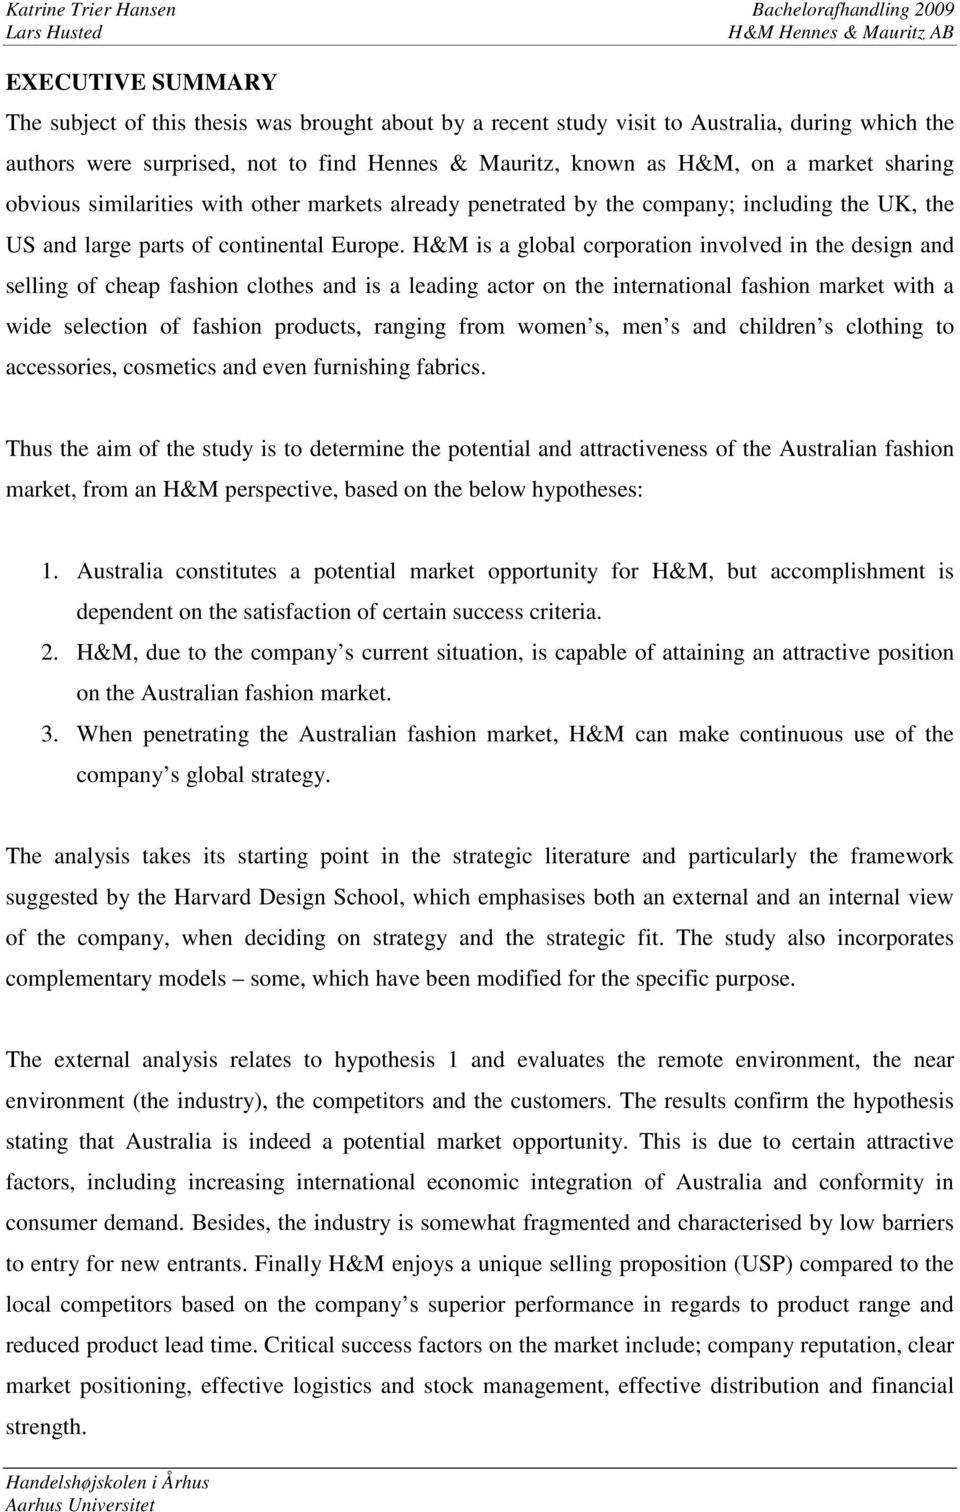 H&M på det australske marked - PDF Free Download